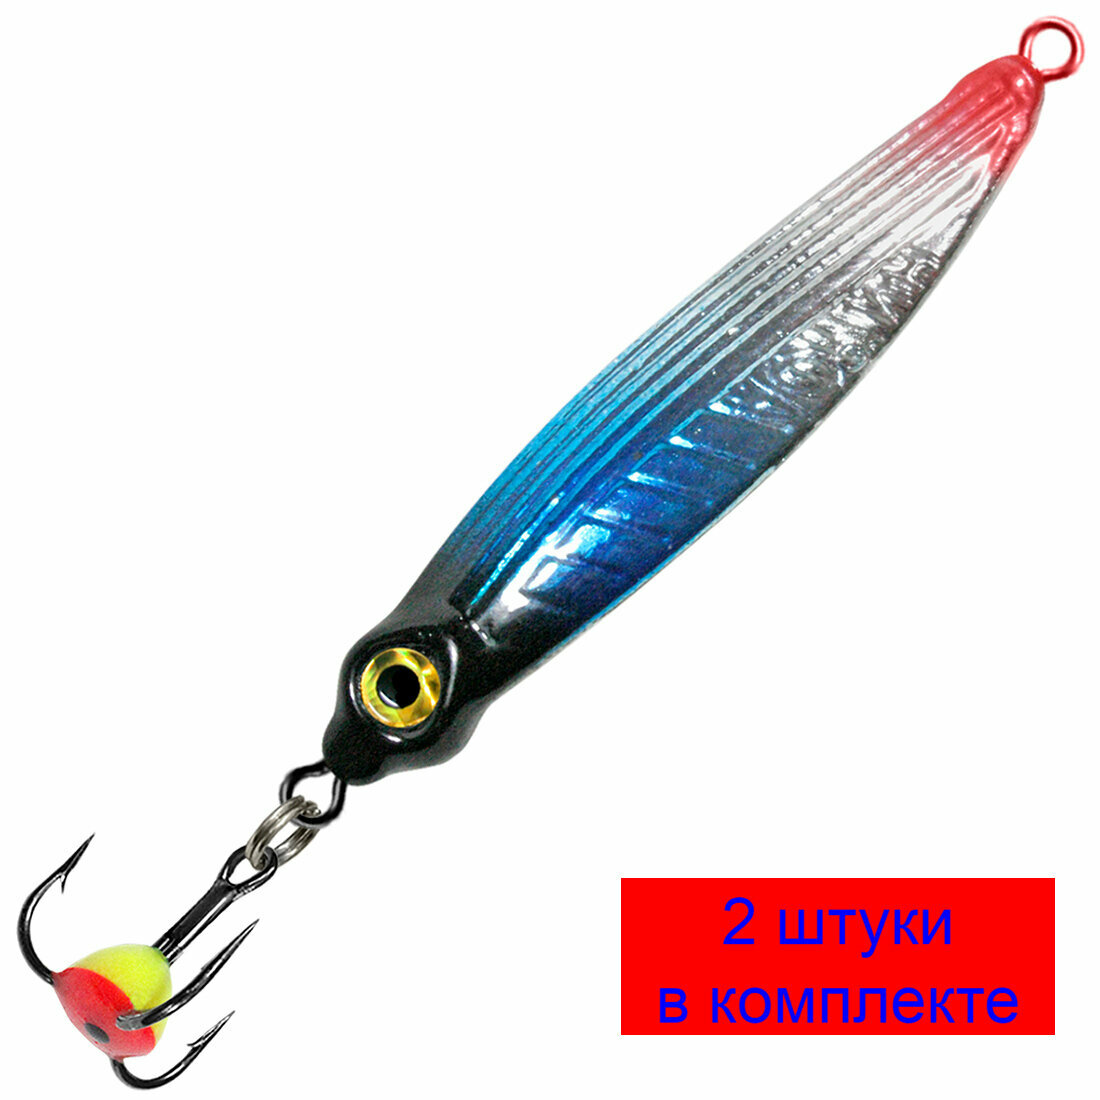 Блесна для рыбалки зимняя AQUA нимфа 60g цвет 02 (серебро черный и красный металлик) 2 штуки в комплекте.